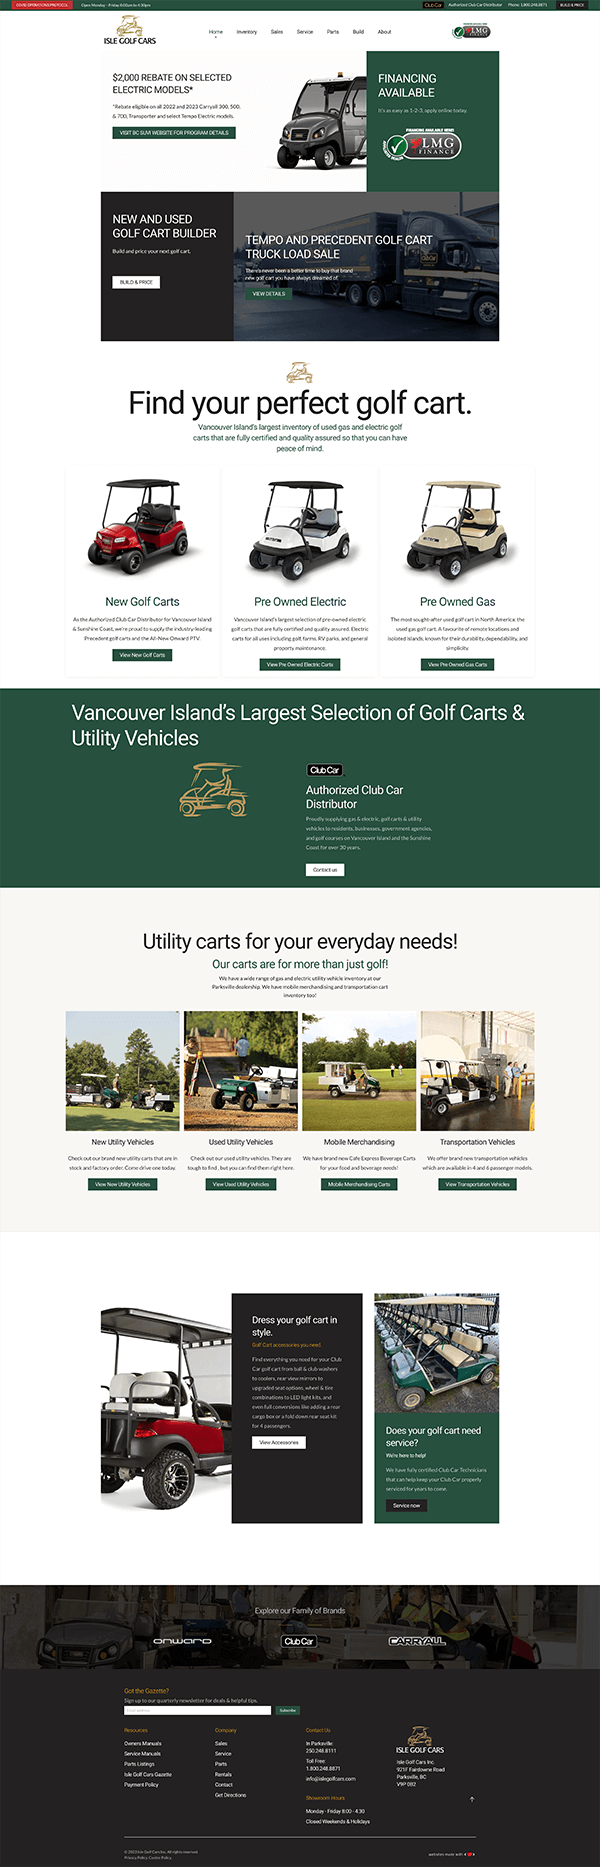 Isle Golf Cars Homepage Full View